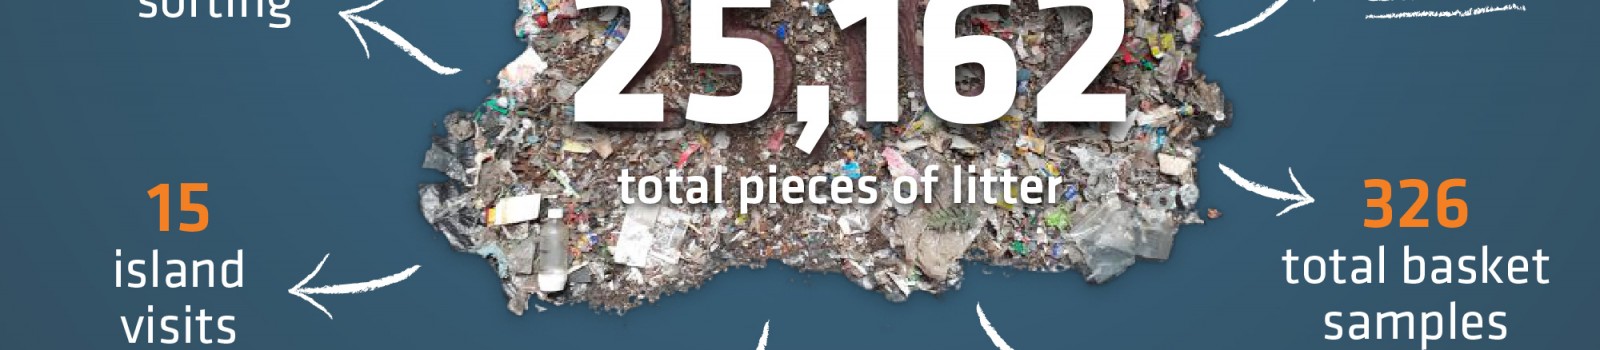 Waiheke Island Litter Hotspot study